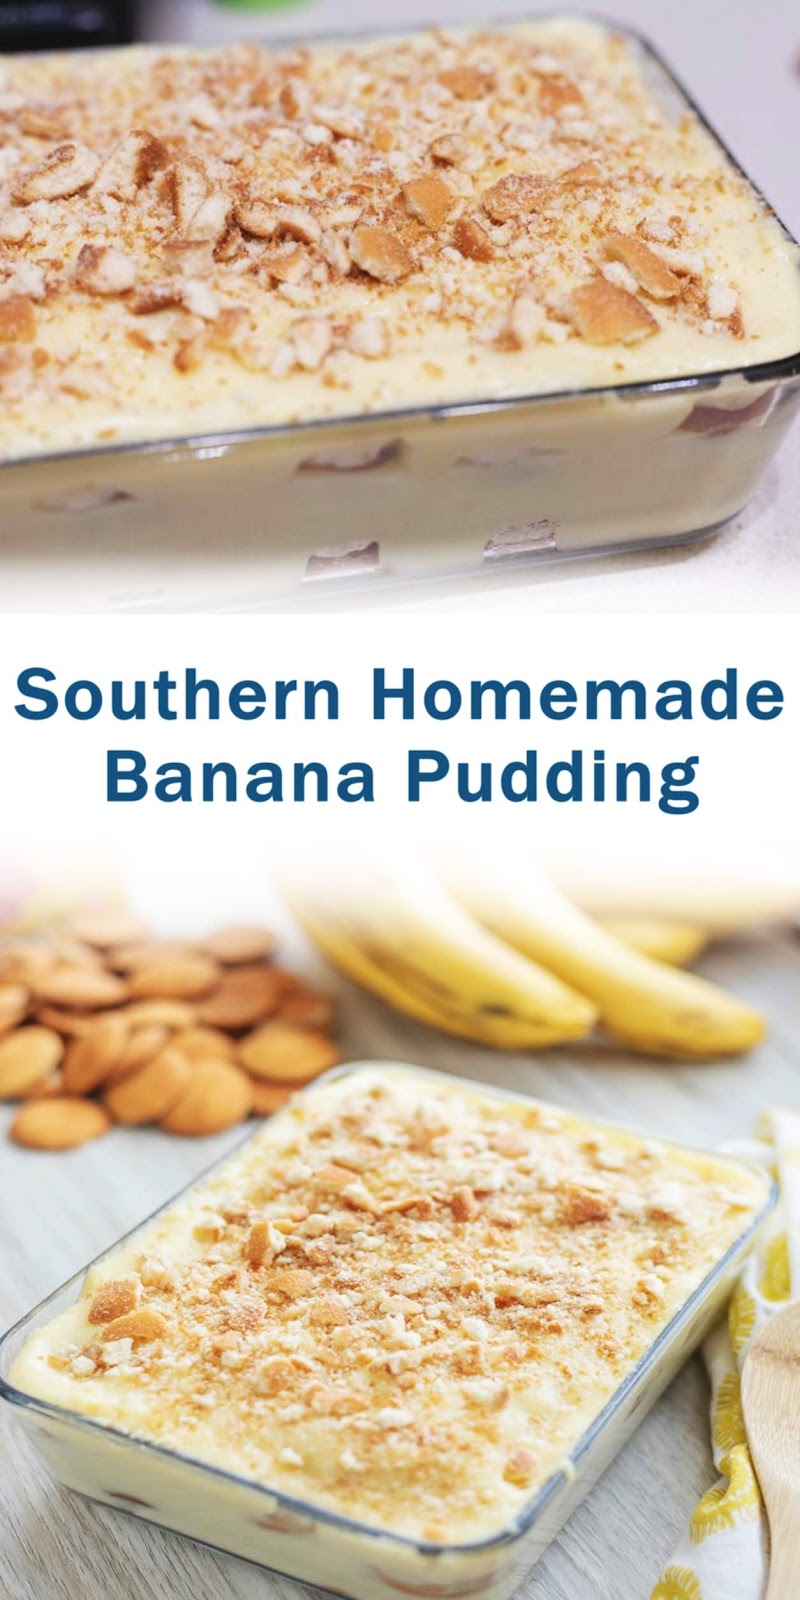 Southern Homemade Banana Pudding